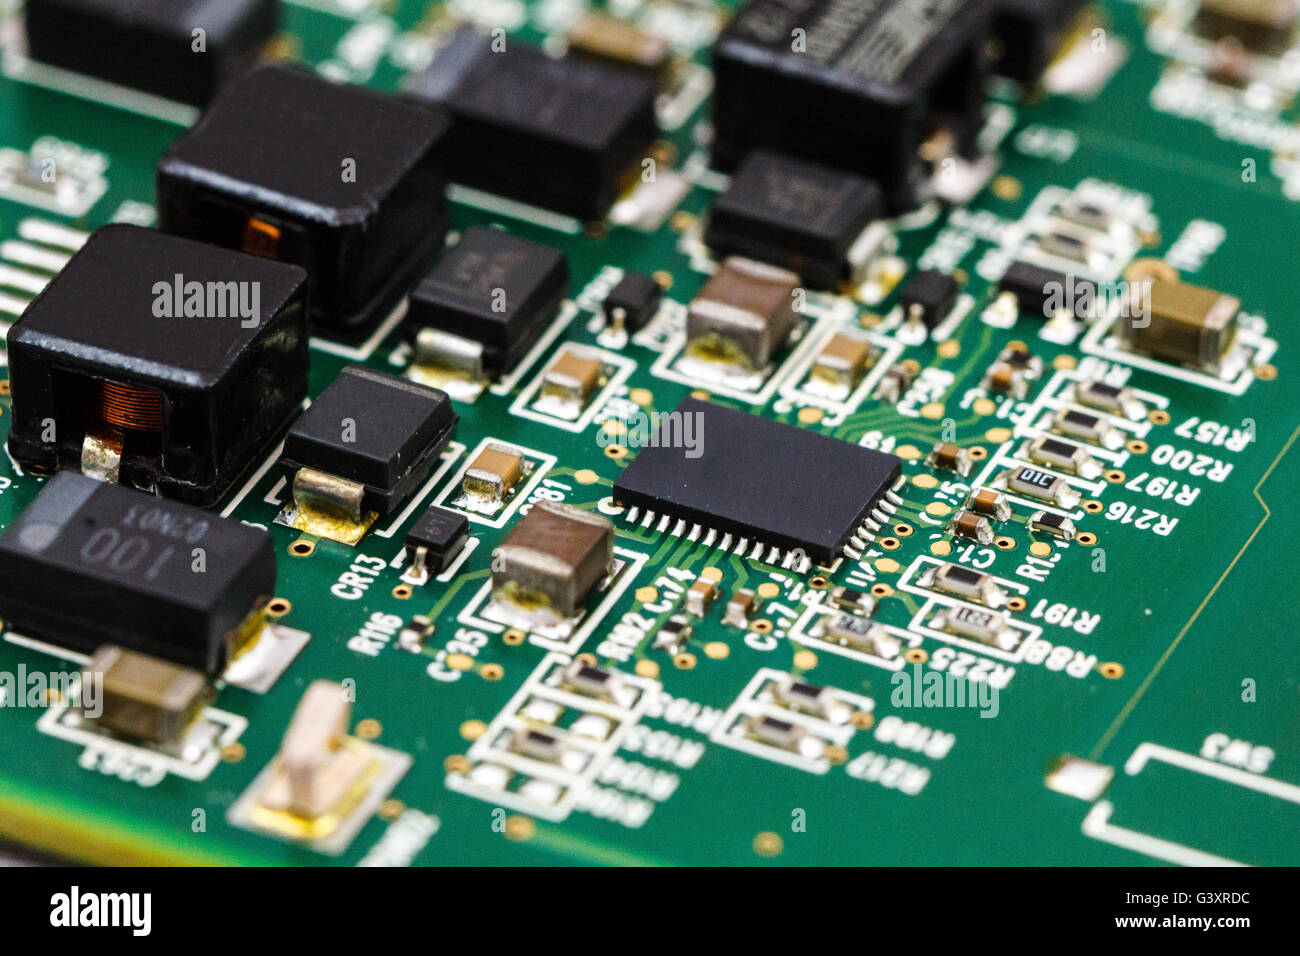 Placa de circuito impreso con ICs, chip condensadores y resistencias SMD. Foto de stock